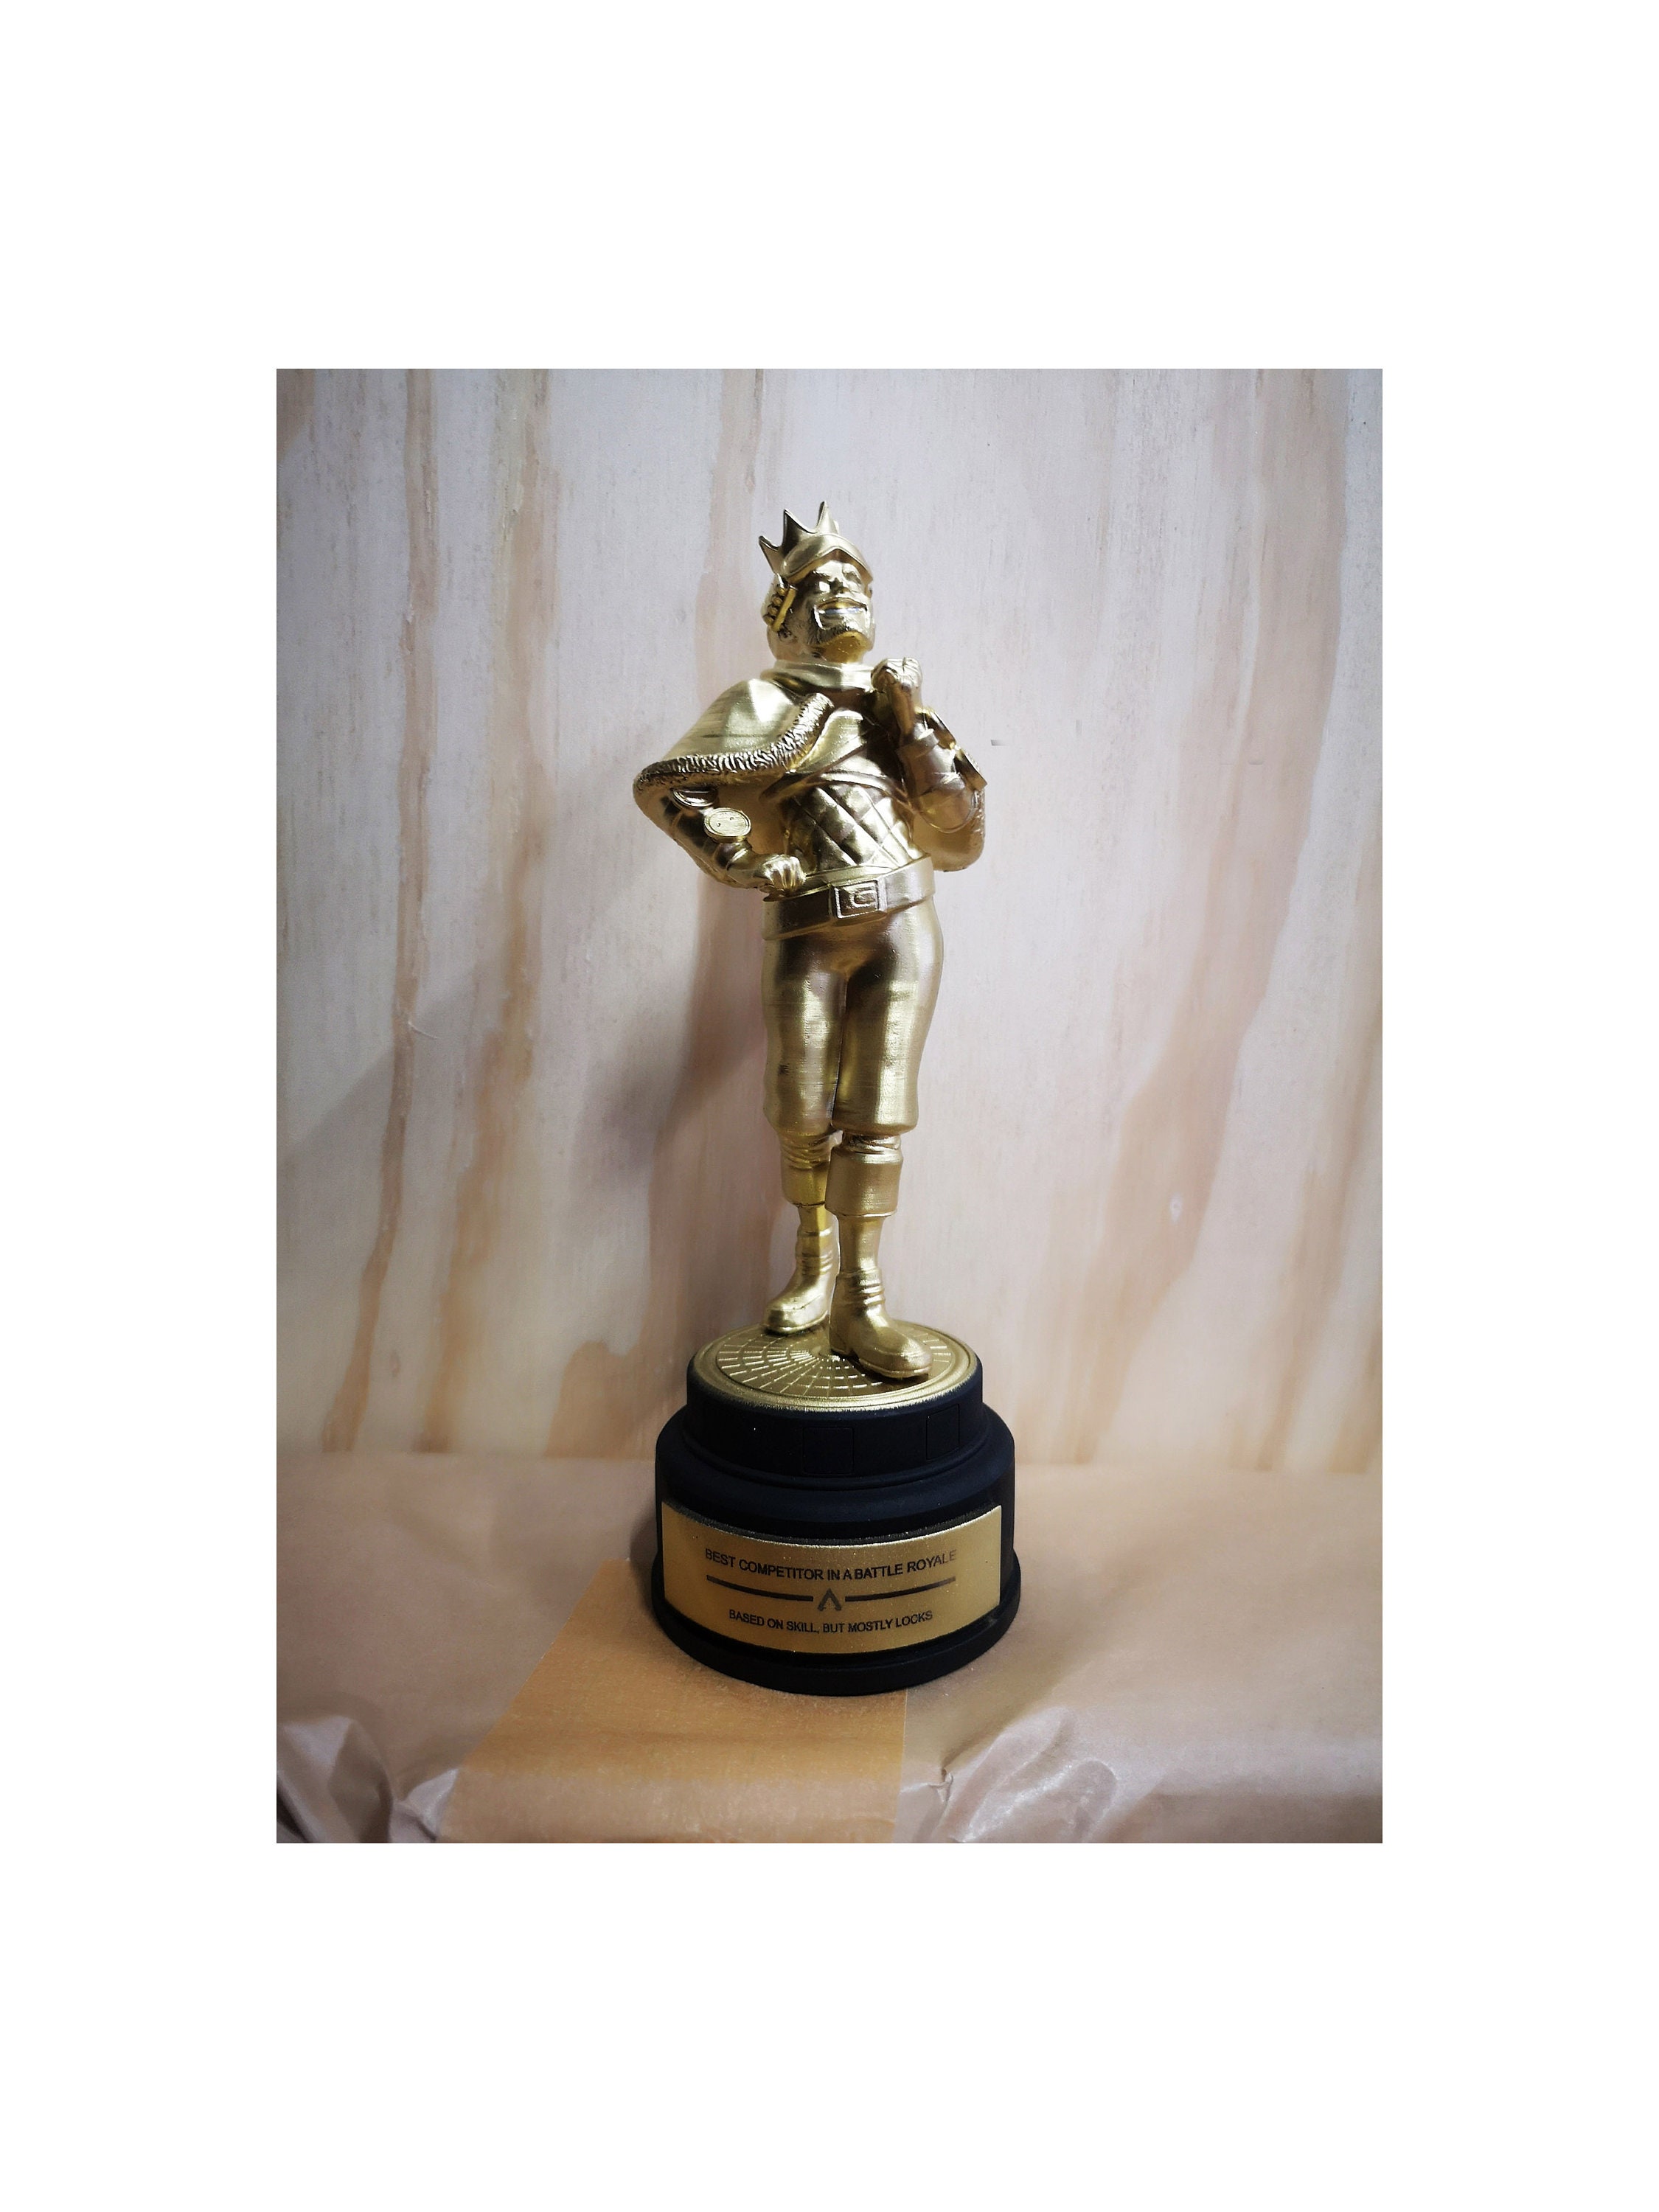 Mirage Heirloom Apex Legends Replica Statue Trophy Etsy